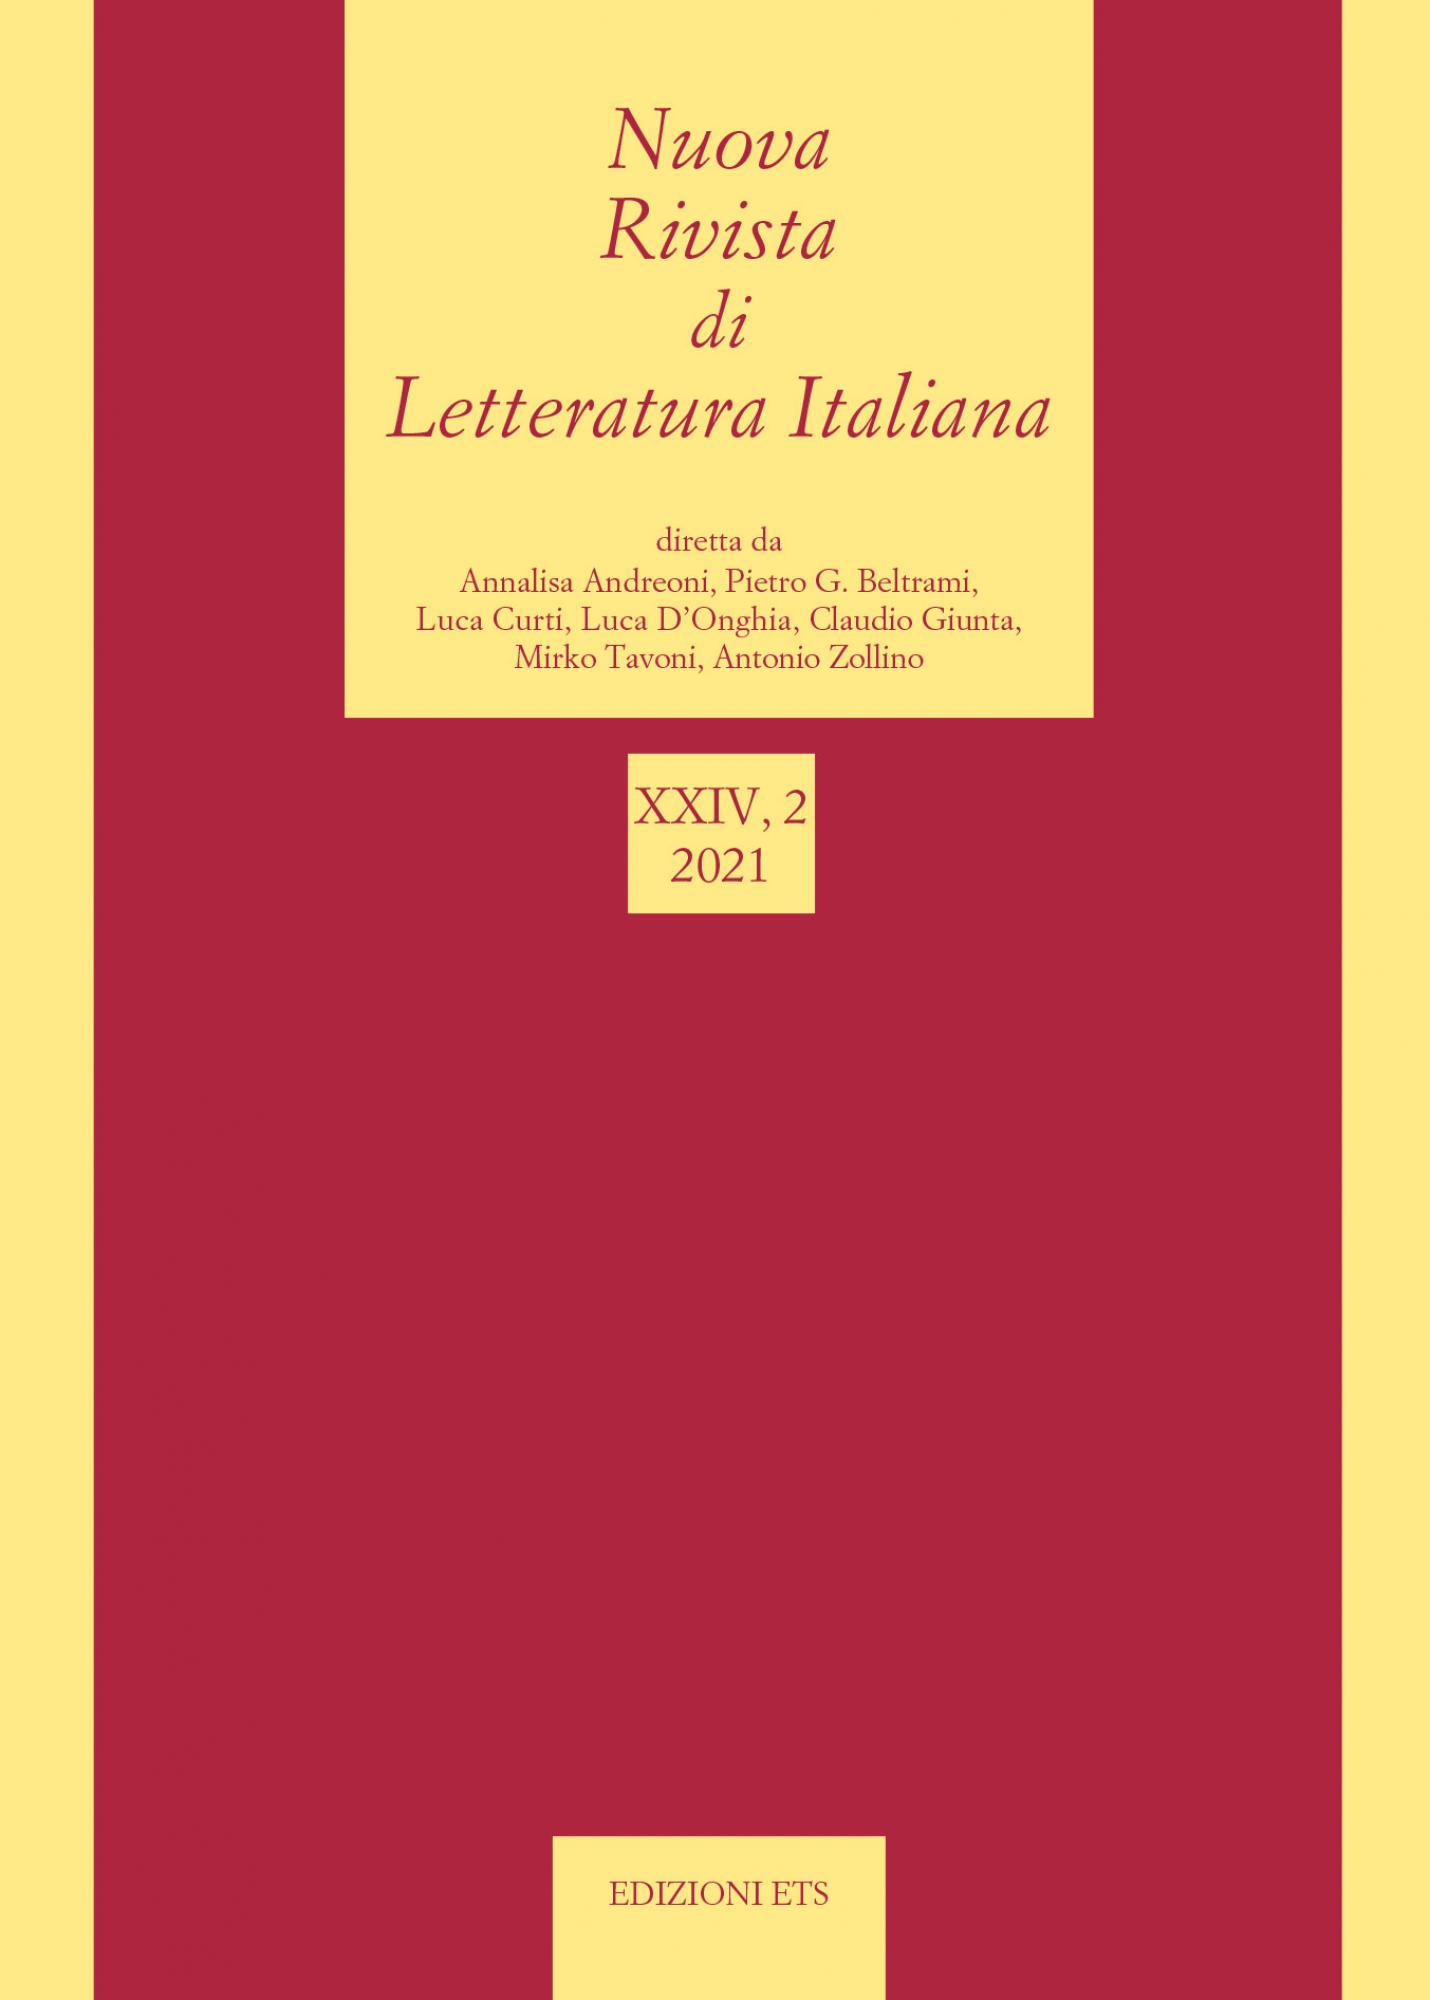 Nuova Rivista di Letteratura Italiana 2021, 2.XXIV, 2 2021